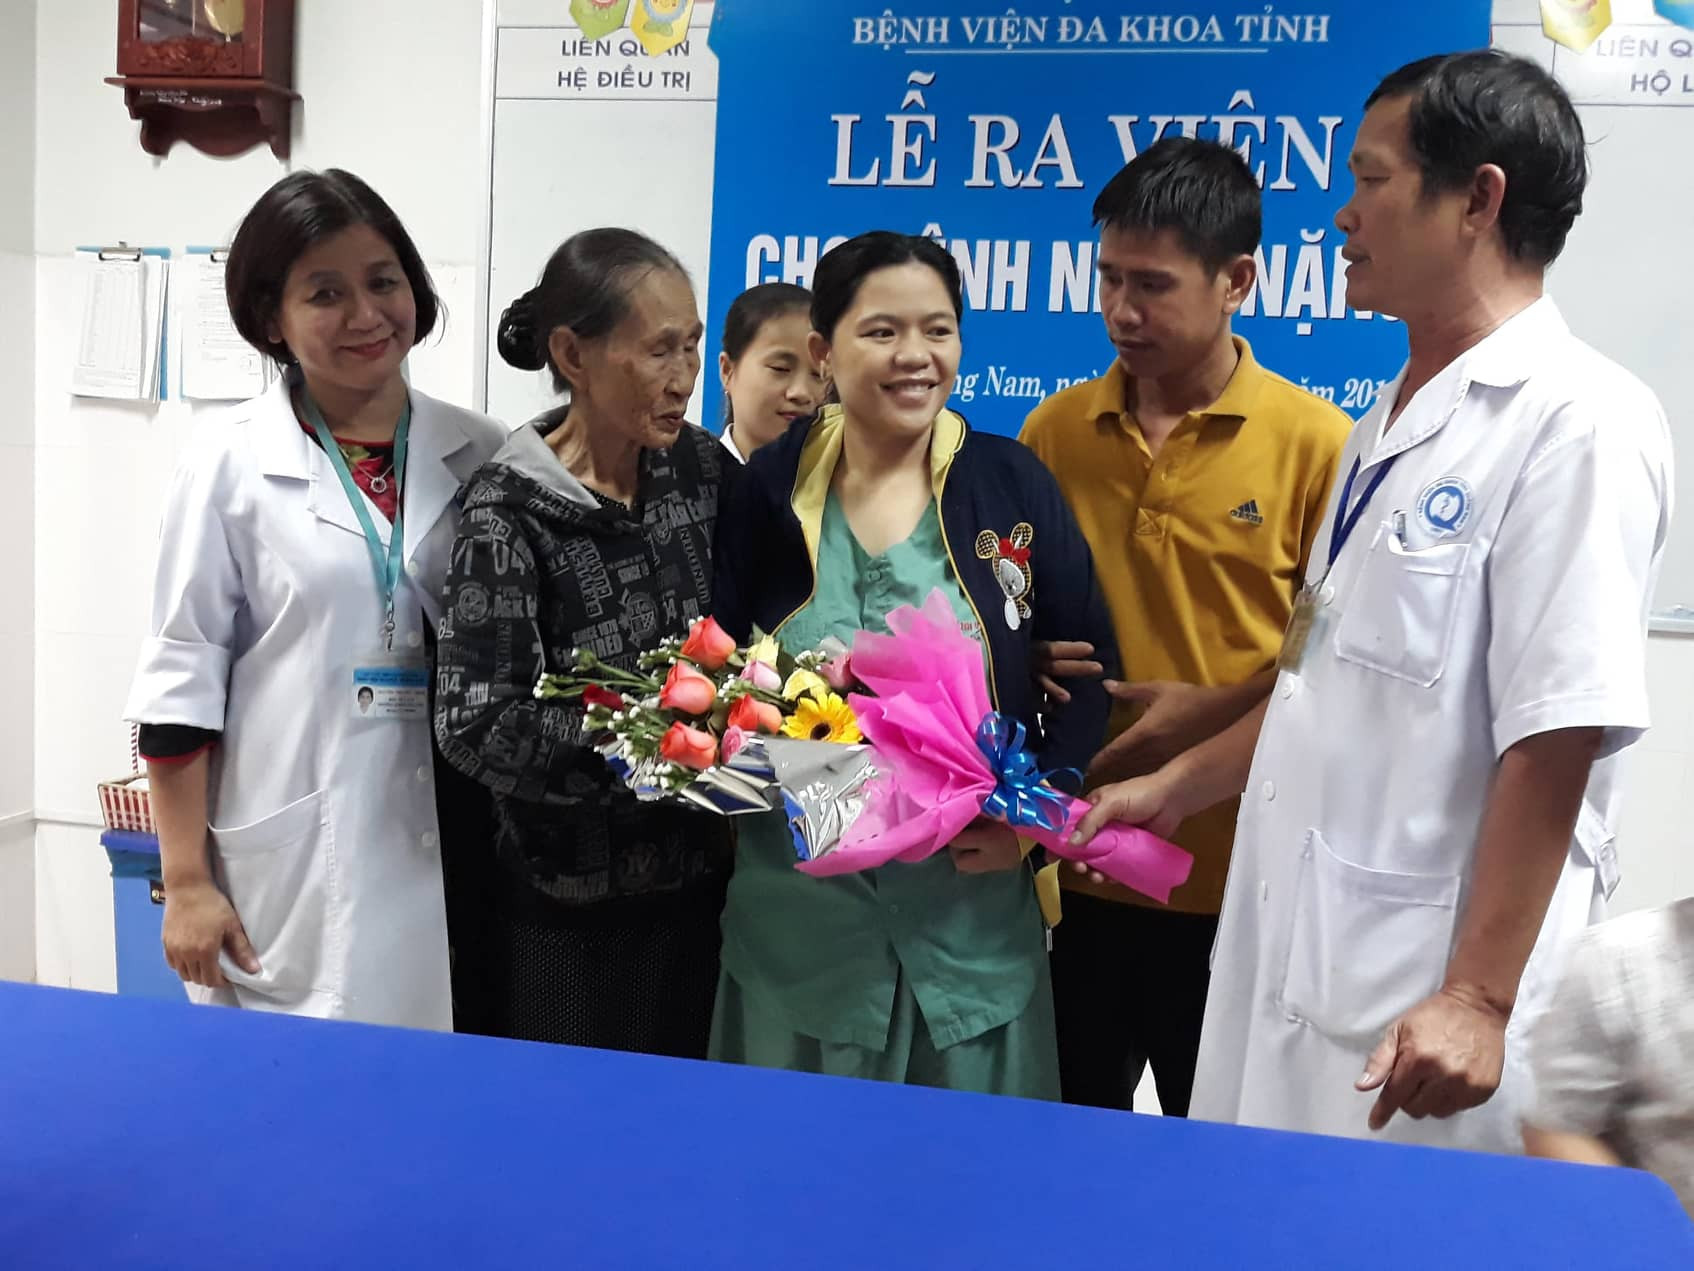 BVĐK Quảng Nam làm lễ ra viện cho bệnh nhân vào chiều 14.12. Ảnh C.N